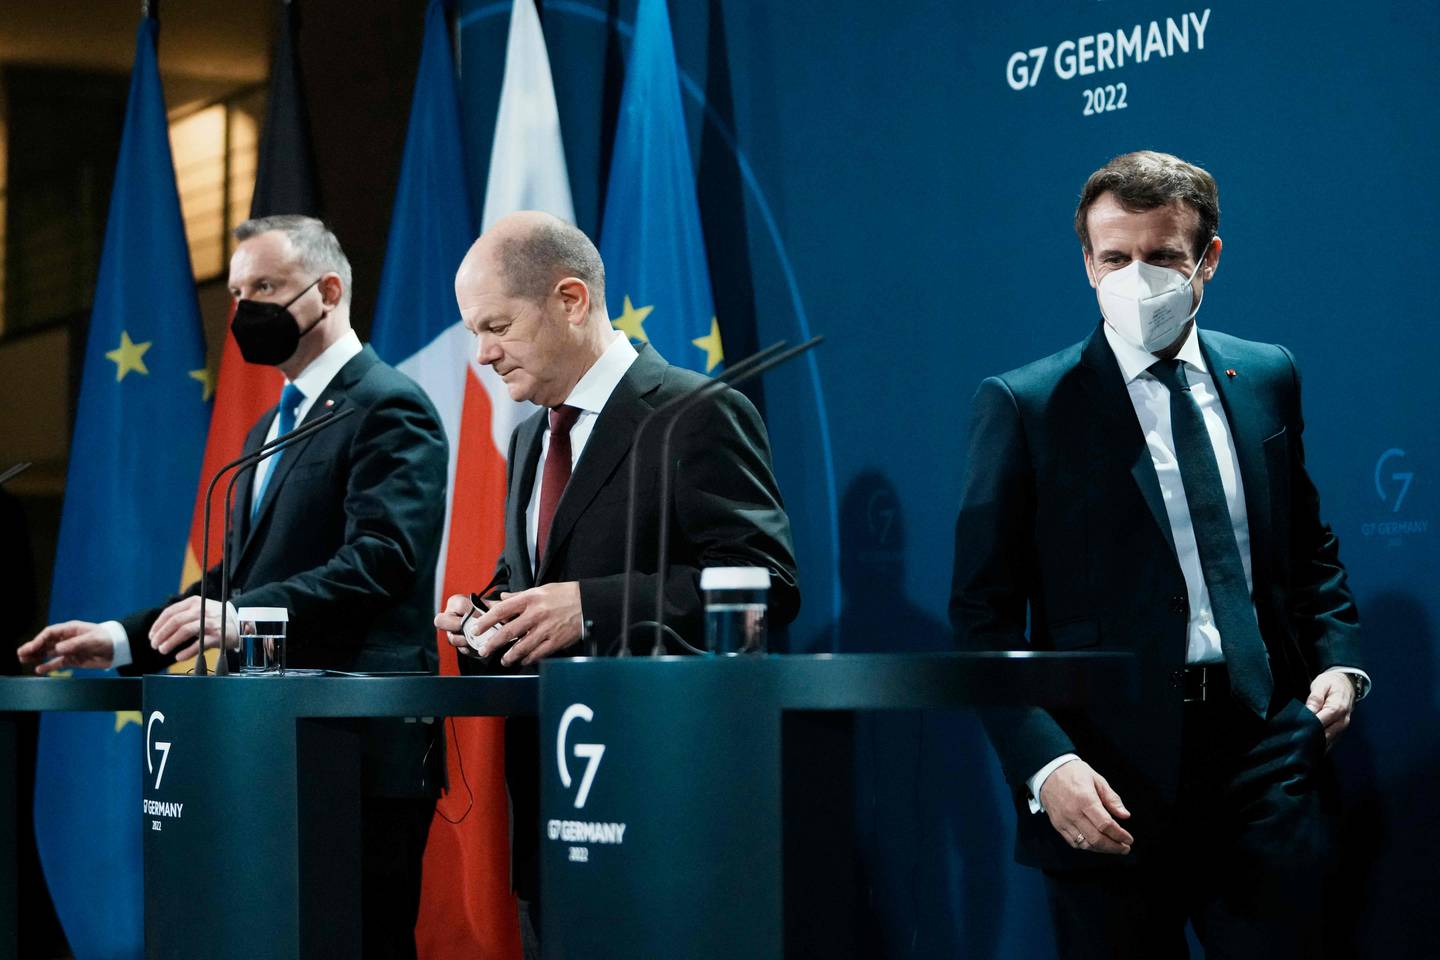 Francia, Alemania y Polonia piden unidad para 'evitar una guerra en Europa'  | La Nación